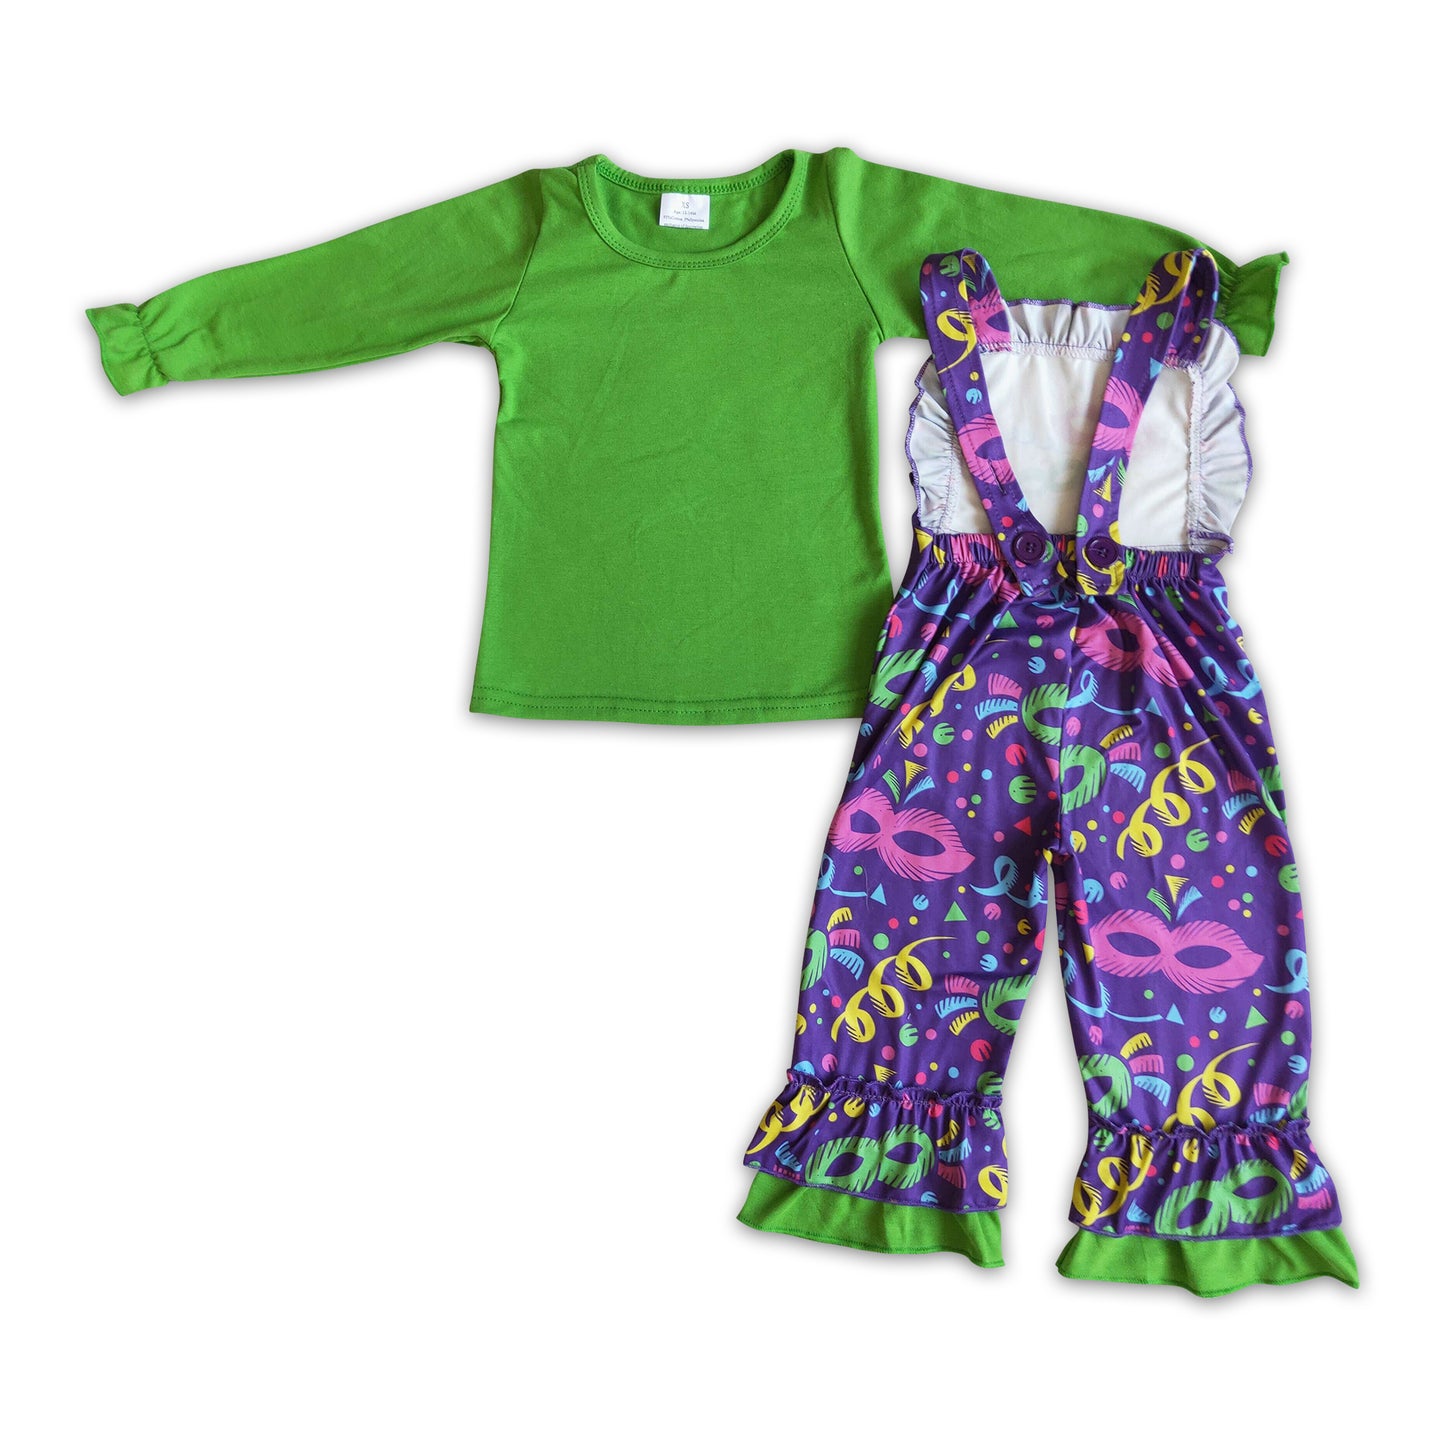 Green long sleeve shirt overalls girls children mardi gras outfits